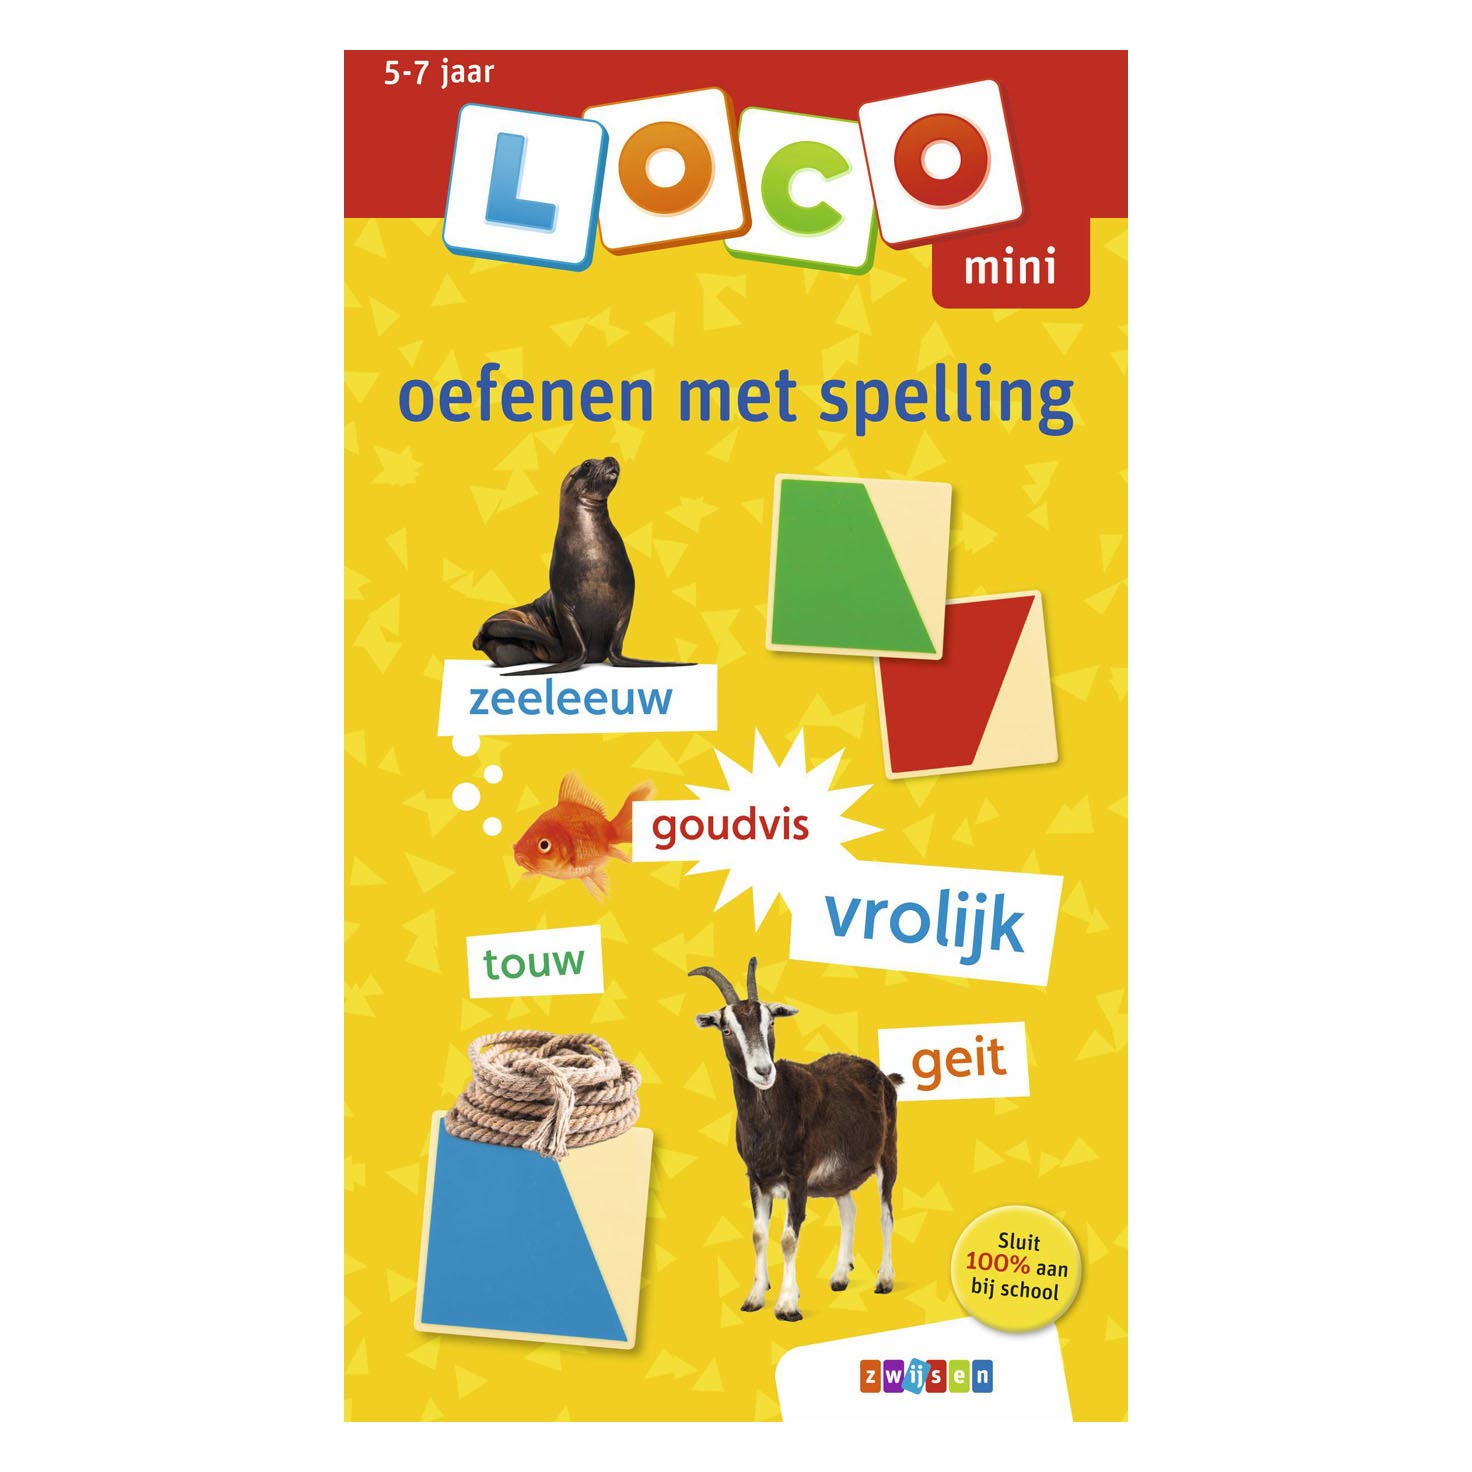 Mini Loco Oefenen met Spelling (5-7 jaar)